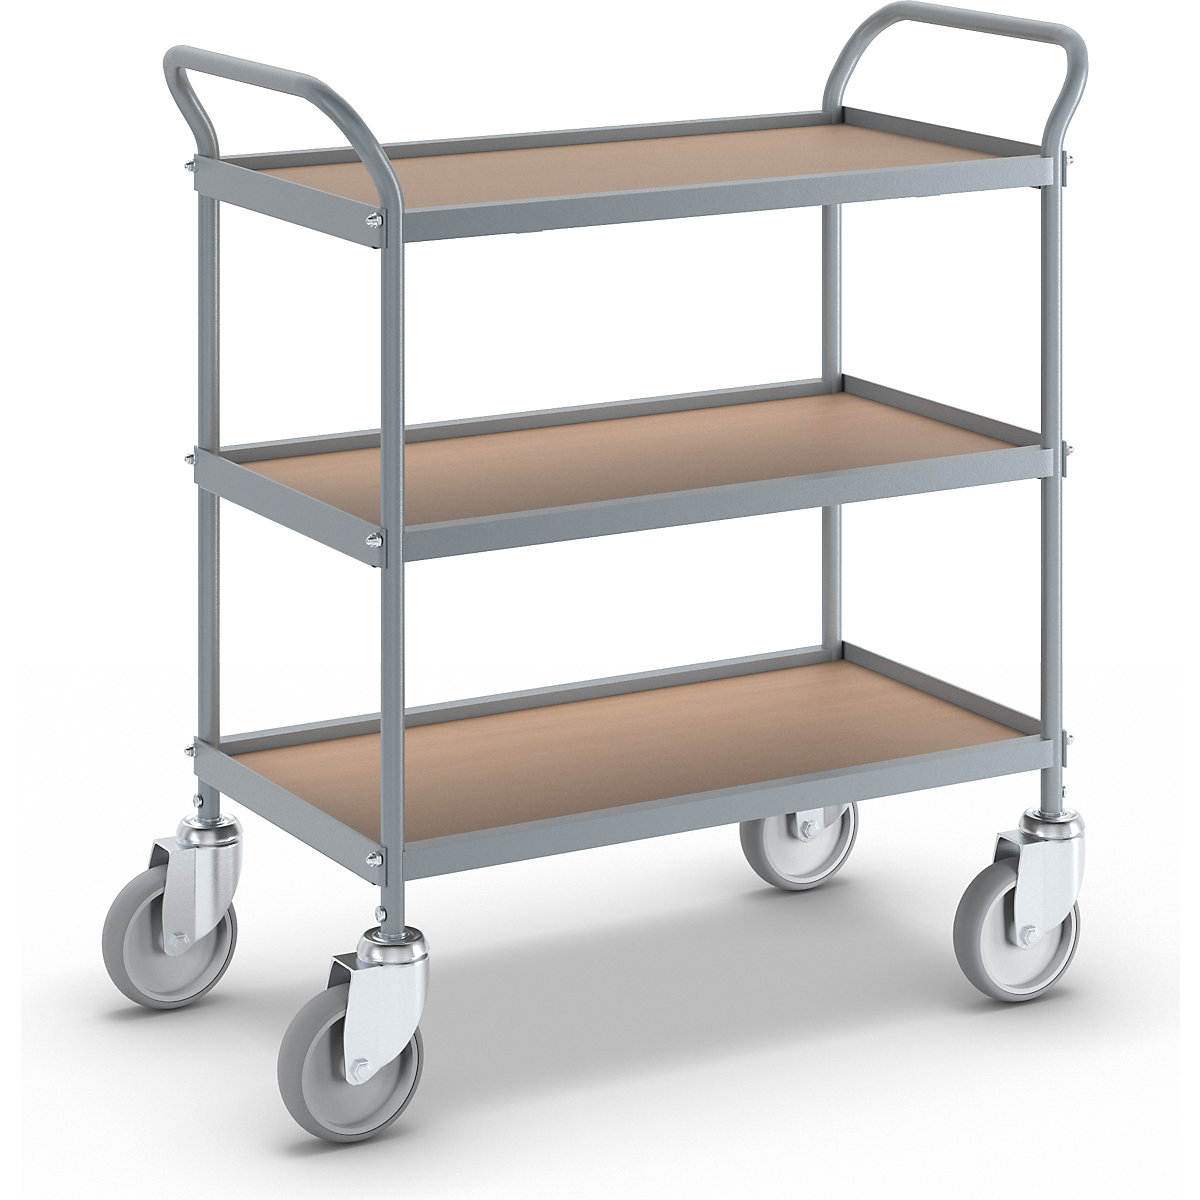 Serving trolley – eurokraft pro, shelf height 250 mm, 3 shelves, with 4 swivel castors, wheel Ø 125 mm-10